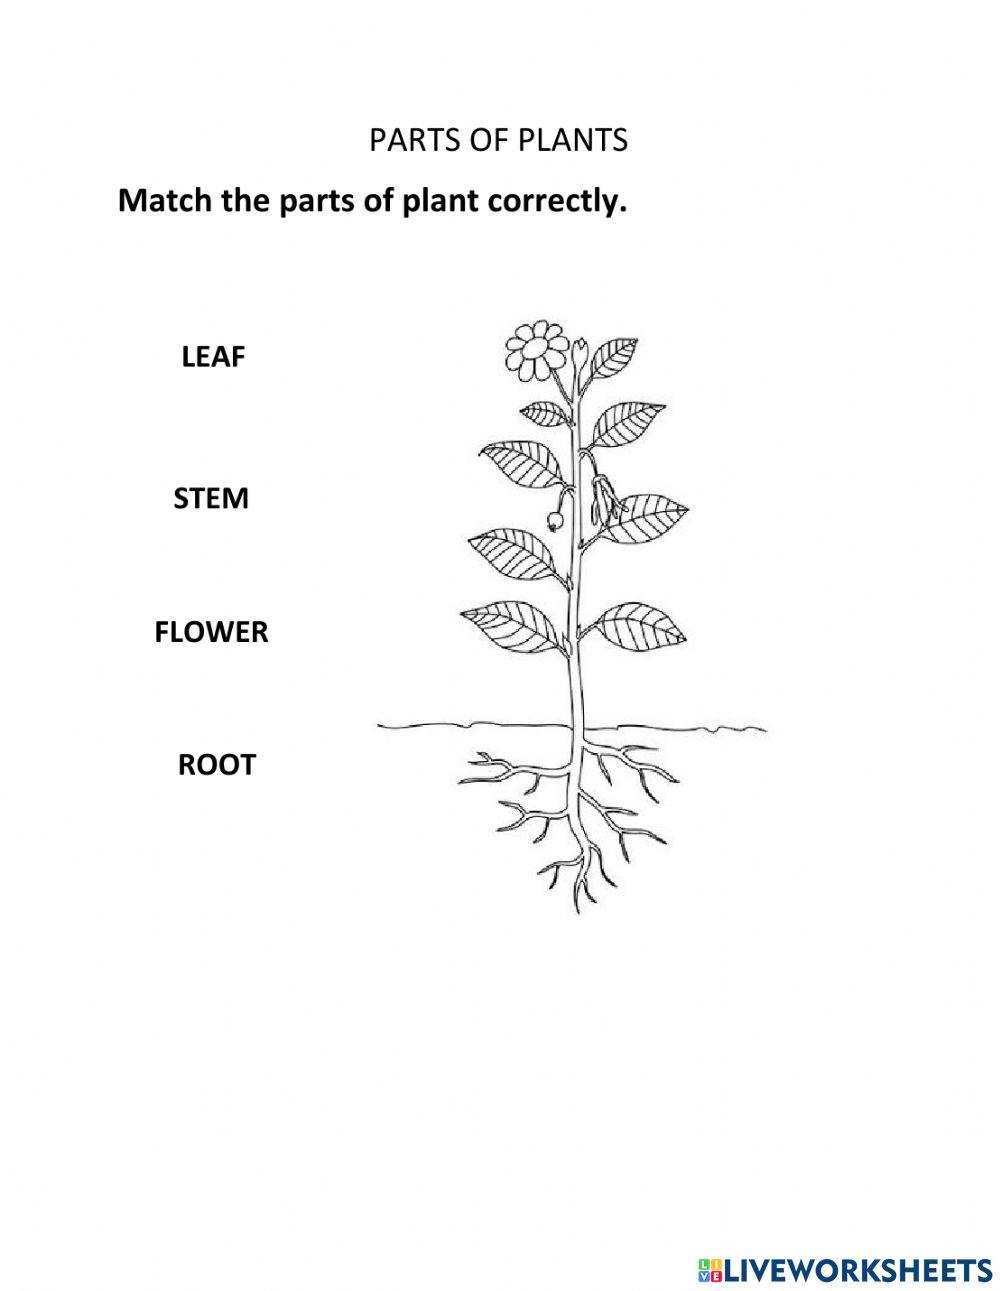 Part of plants